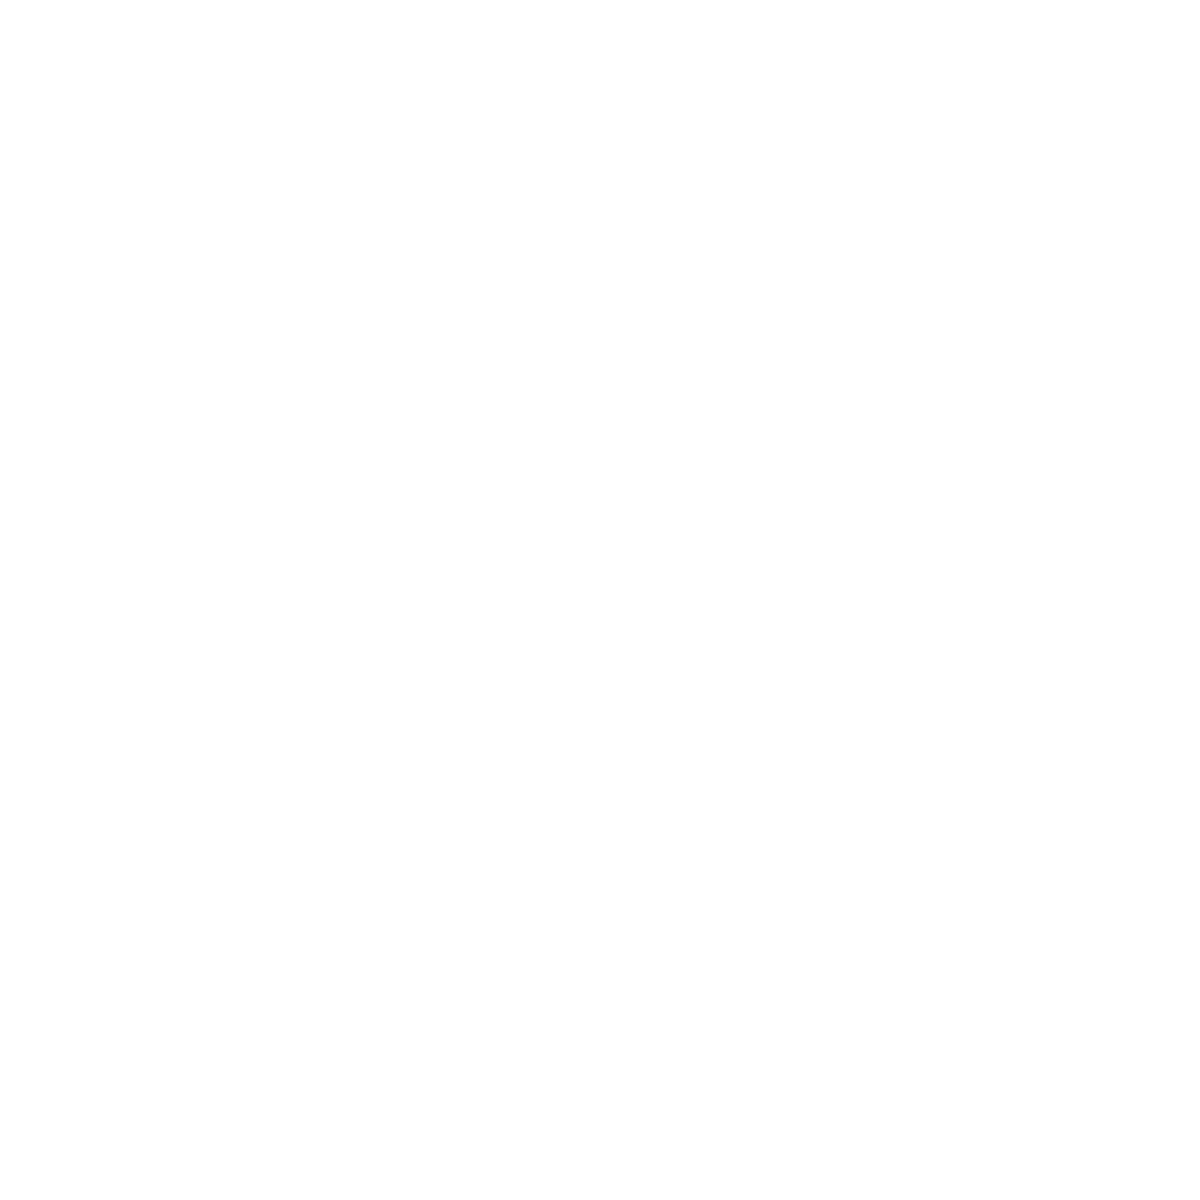 Greater Dandenong Council logo